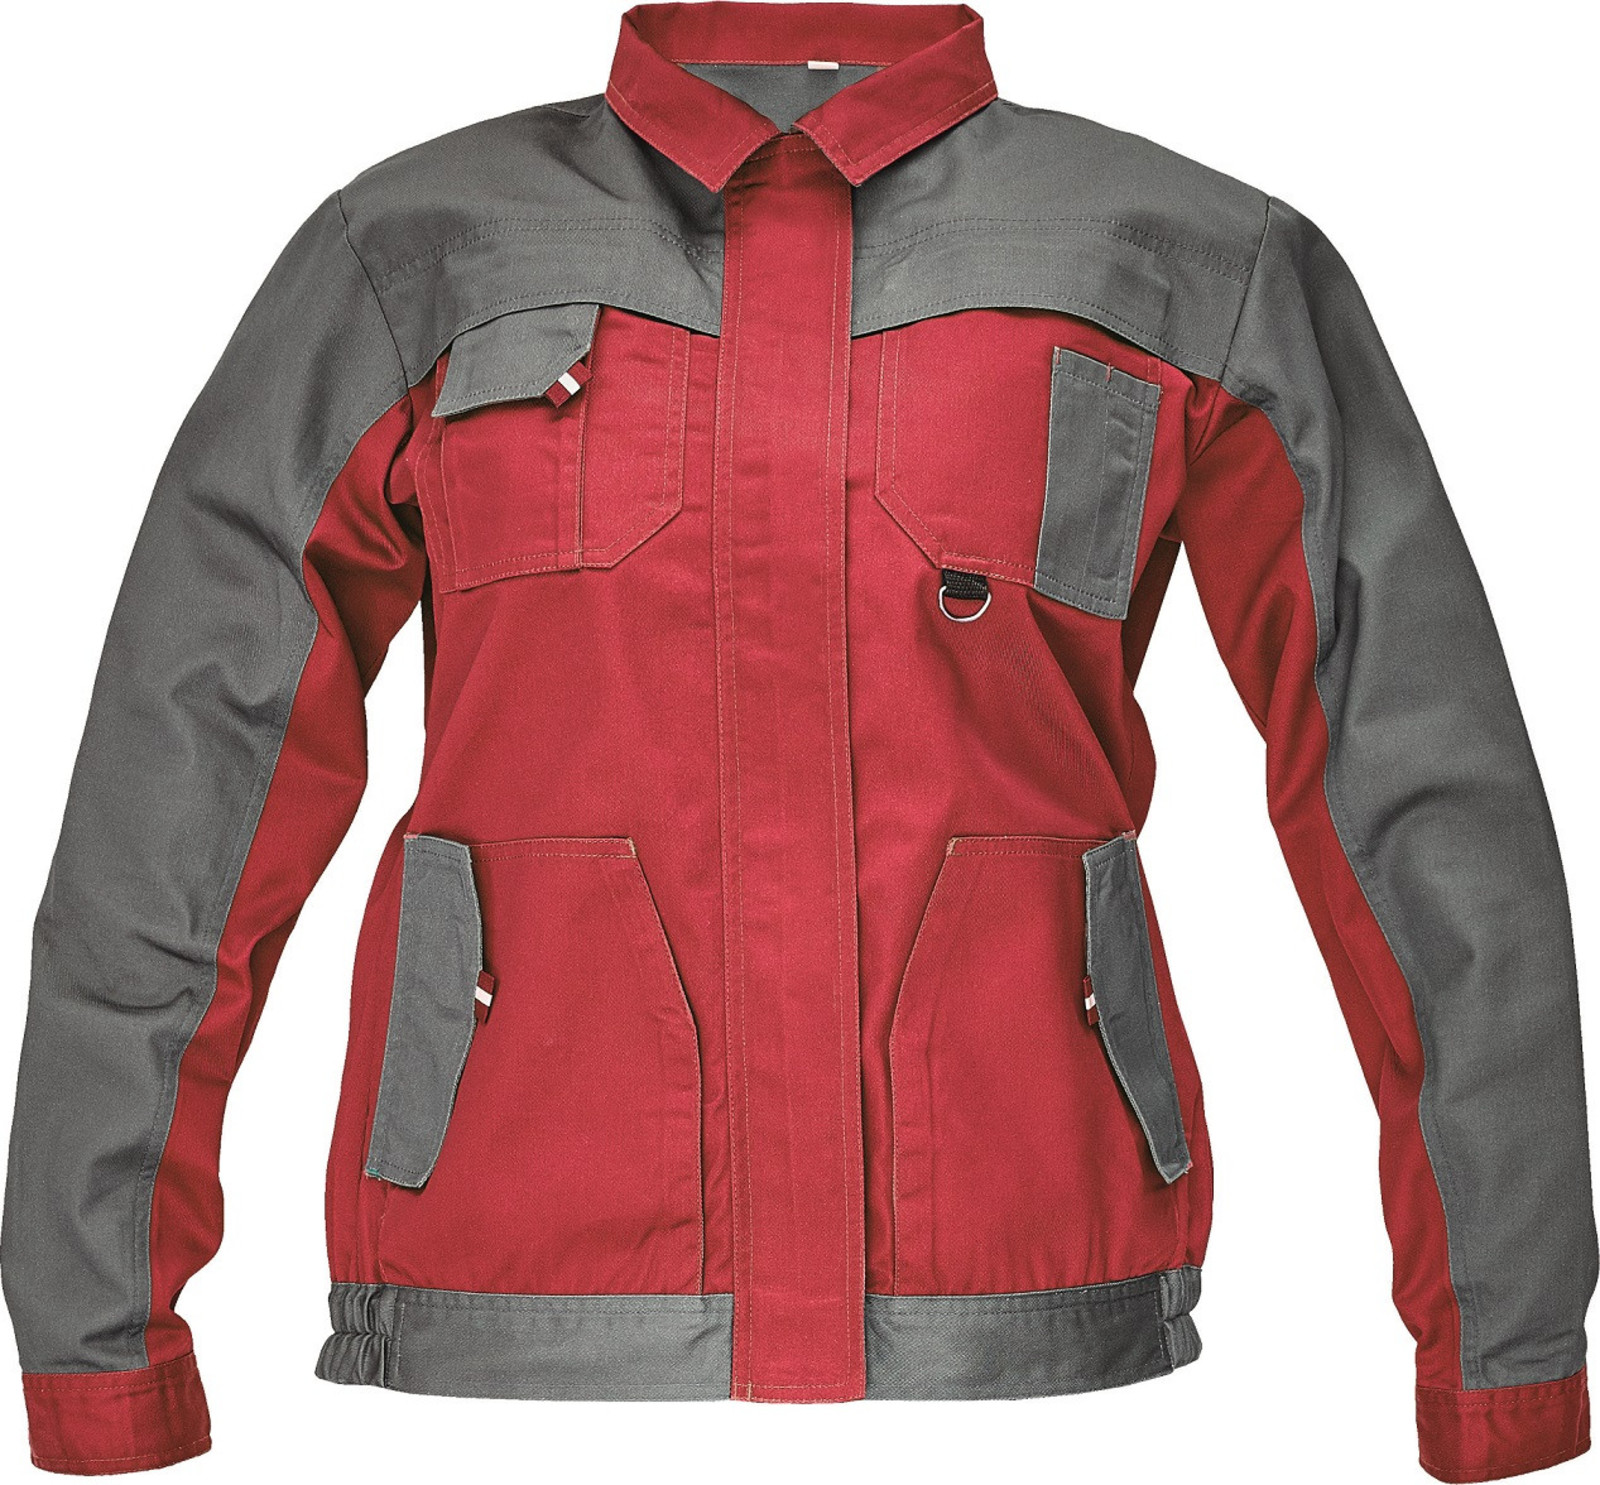 Tenká dámska montérková bunda Max Evo Lady - veľkosť: 38, farba: sivá/červená